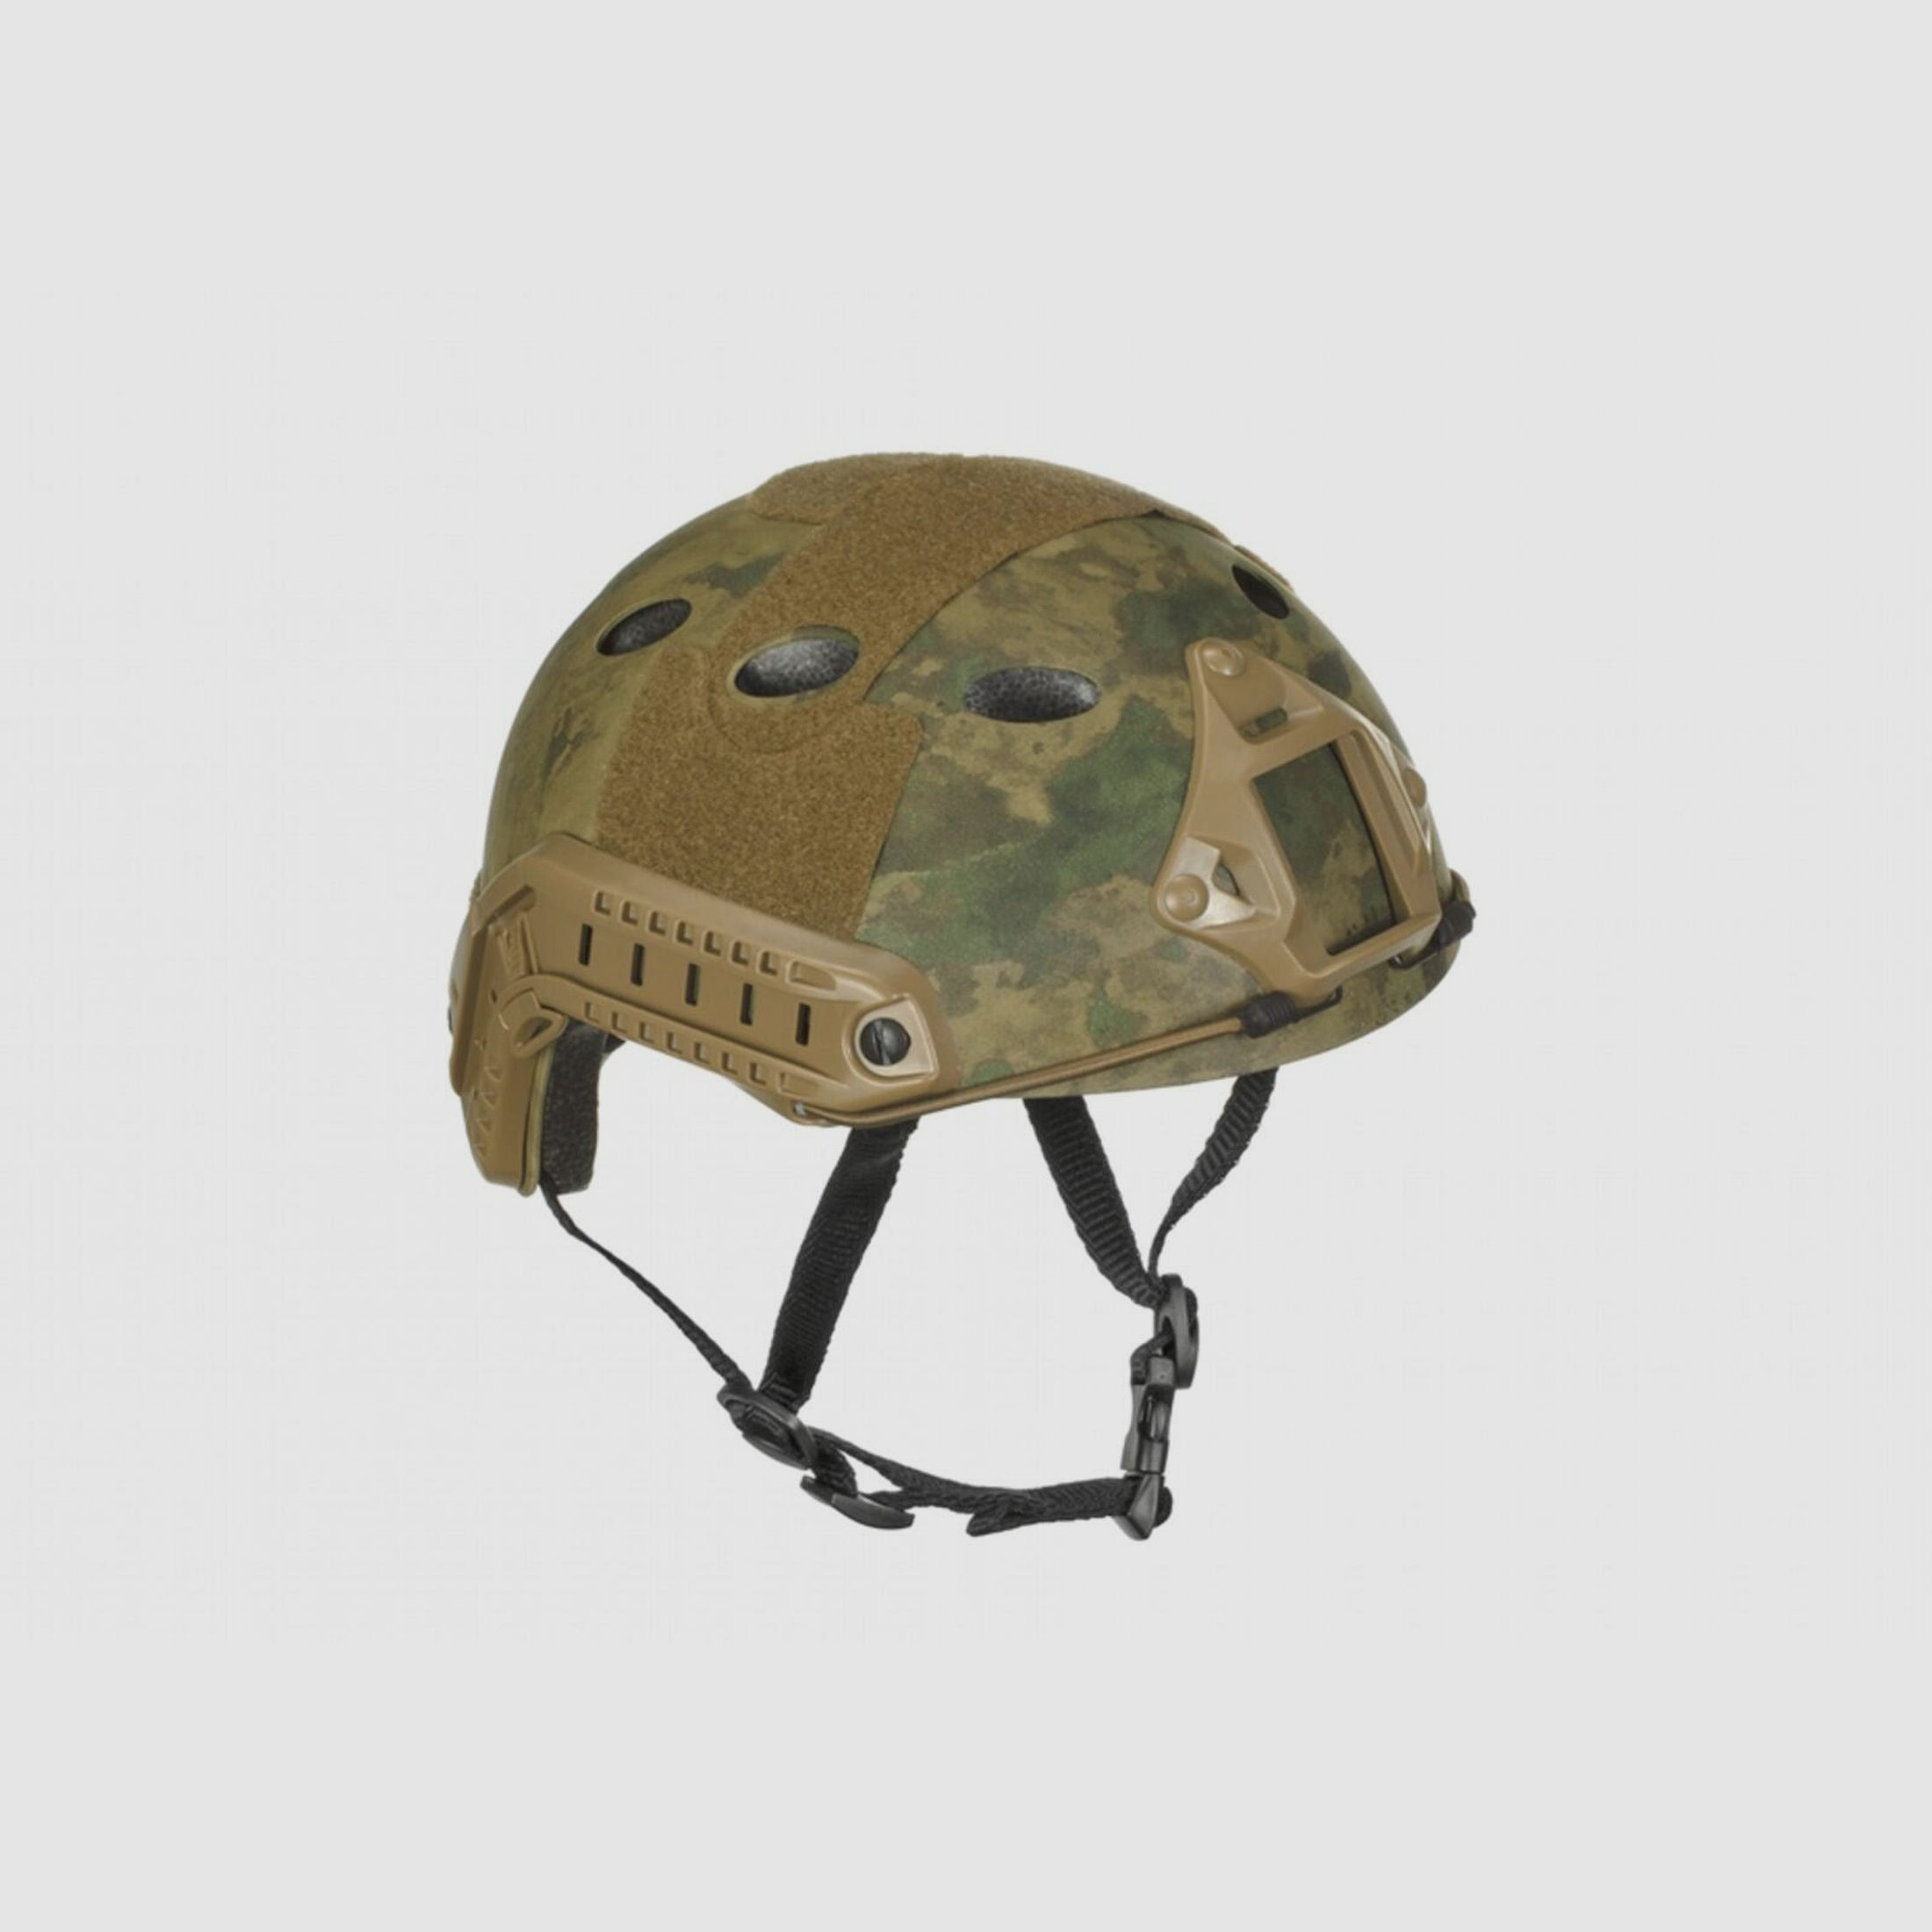 Emerson FAST Helmet PJ Eco Version AT-FG